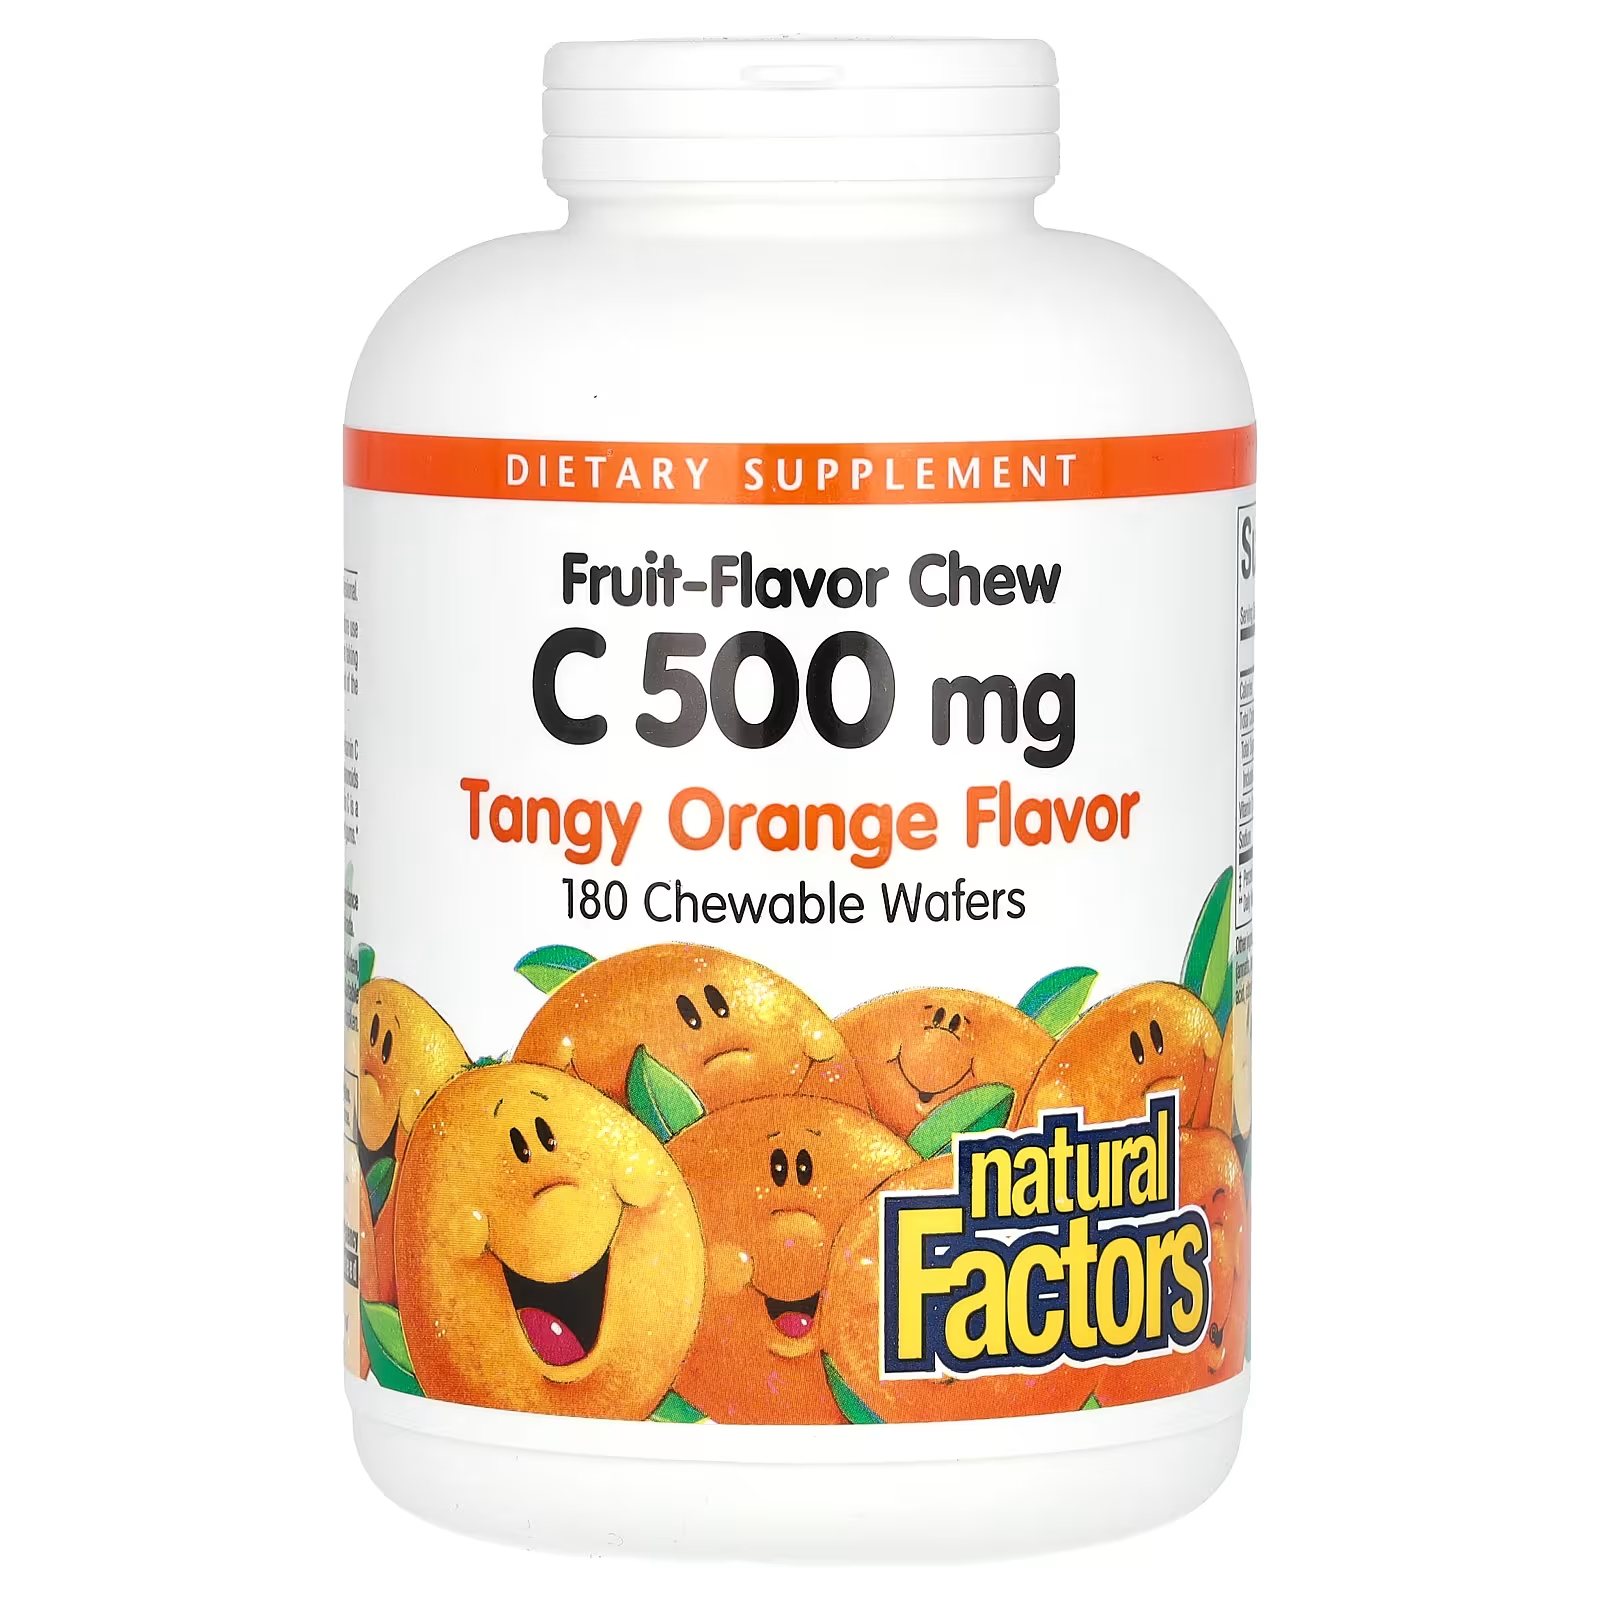 Витамин С Natural Factors с фруктовым вкусом, апельсин, 500 мг, 180 жевательных вафель natural factors жевательные фруктовые таблетки с витамином c с насыщенным вкусом апельсина 500 мг 180 жевательных таблеток